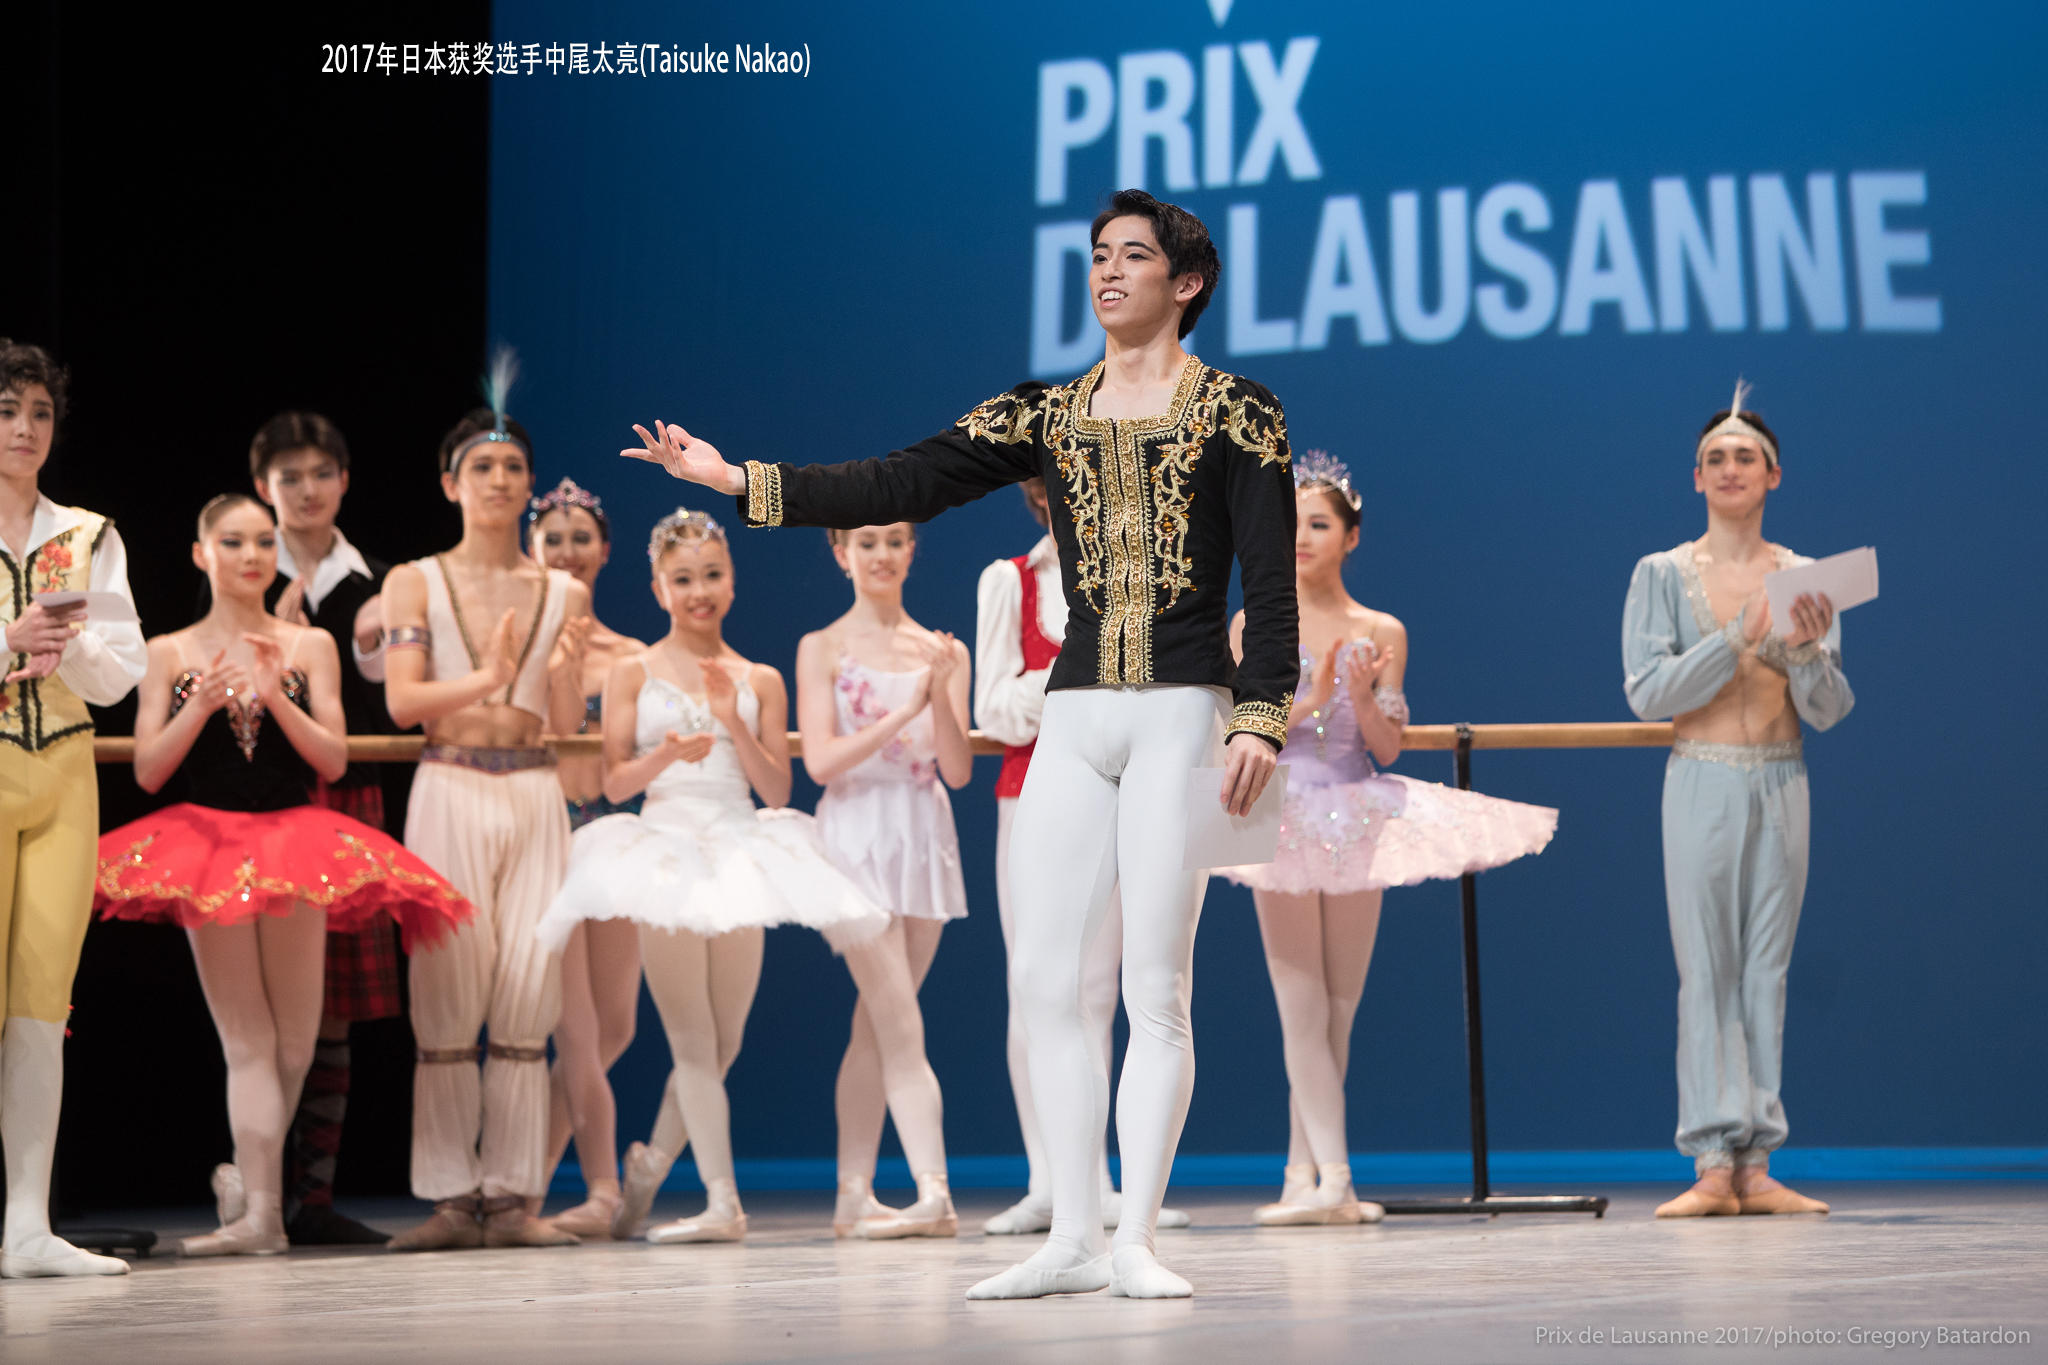 17岁的中尾太亮(Taisuke Nakao)在2017年洛桑芭蕾舞比赛决赛中获得第三名